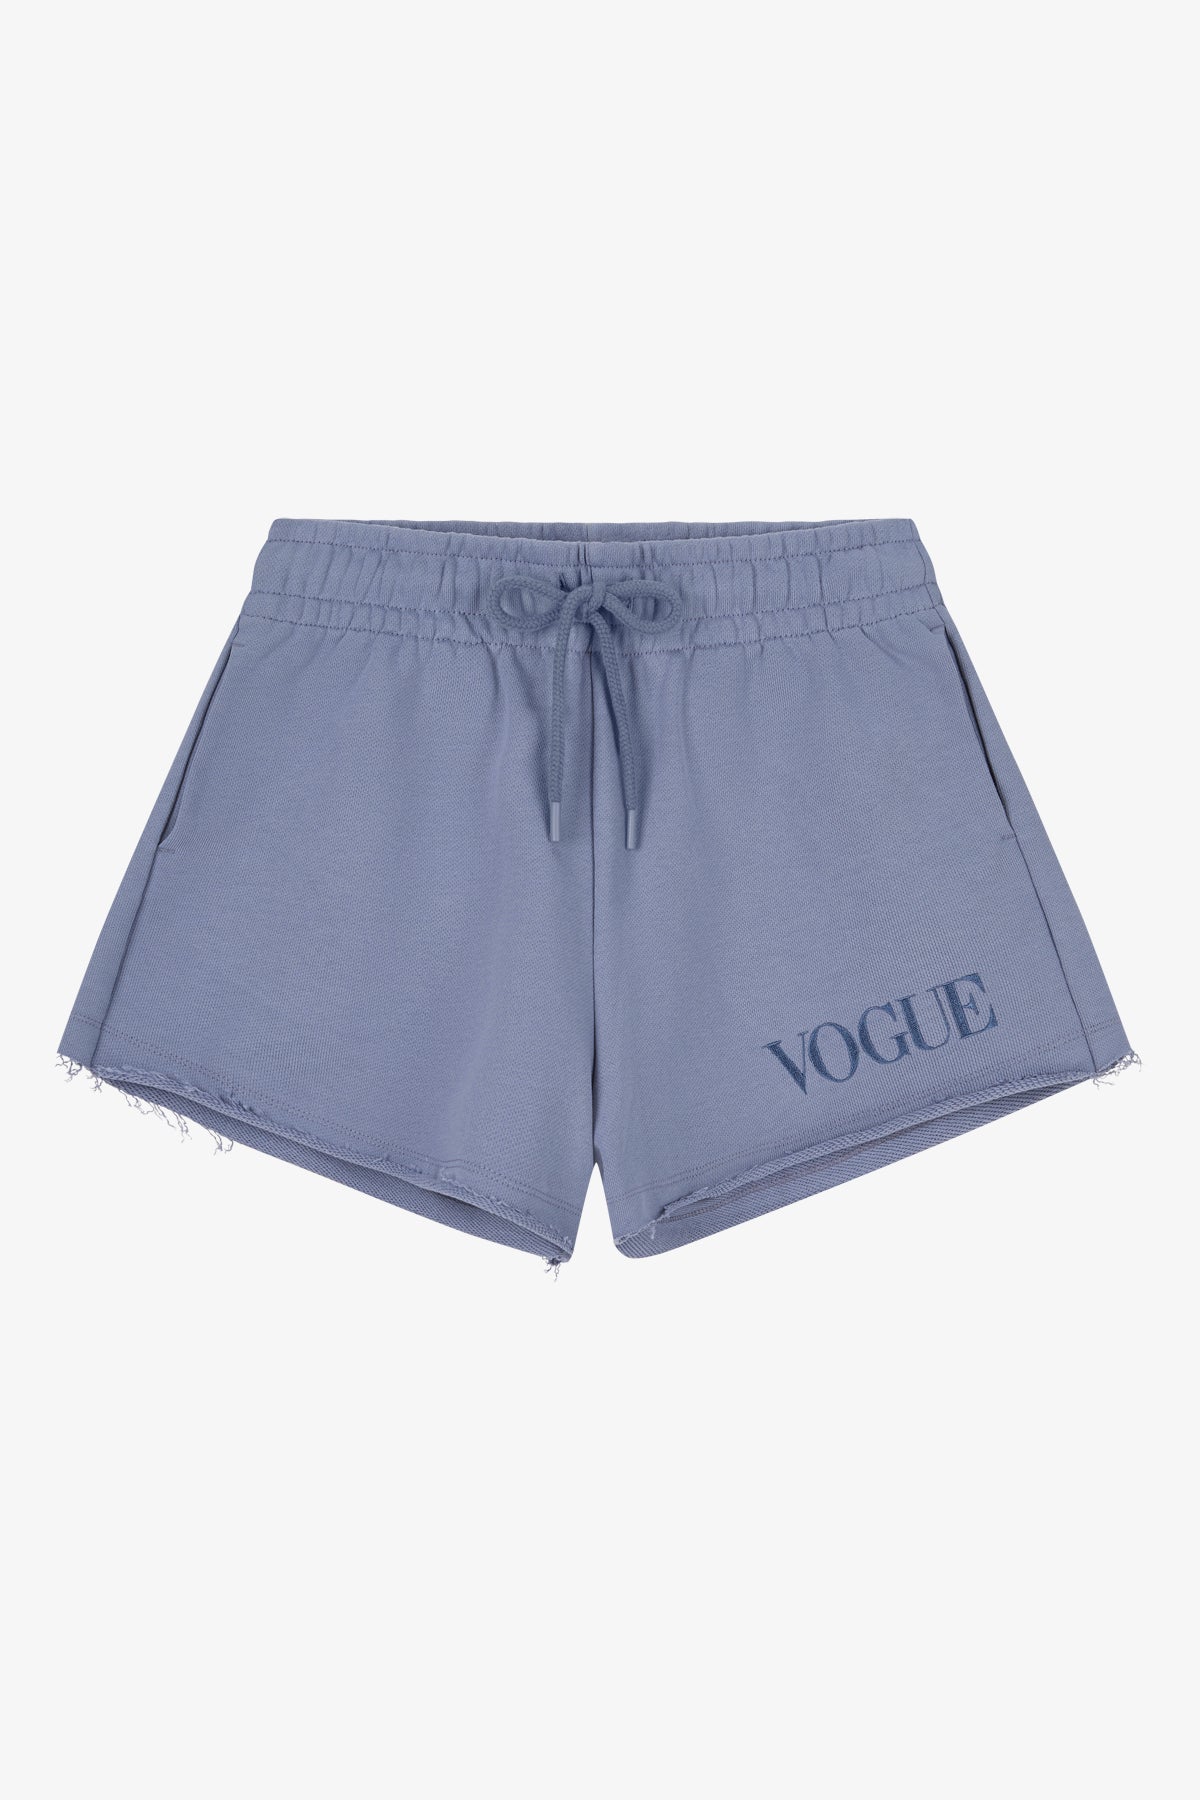 Shorts VOGUE Azules Con Logo Bordado, XL / Azul